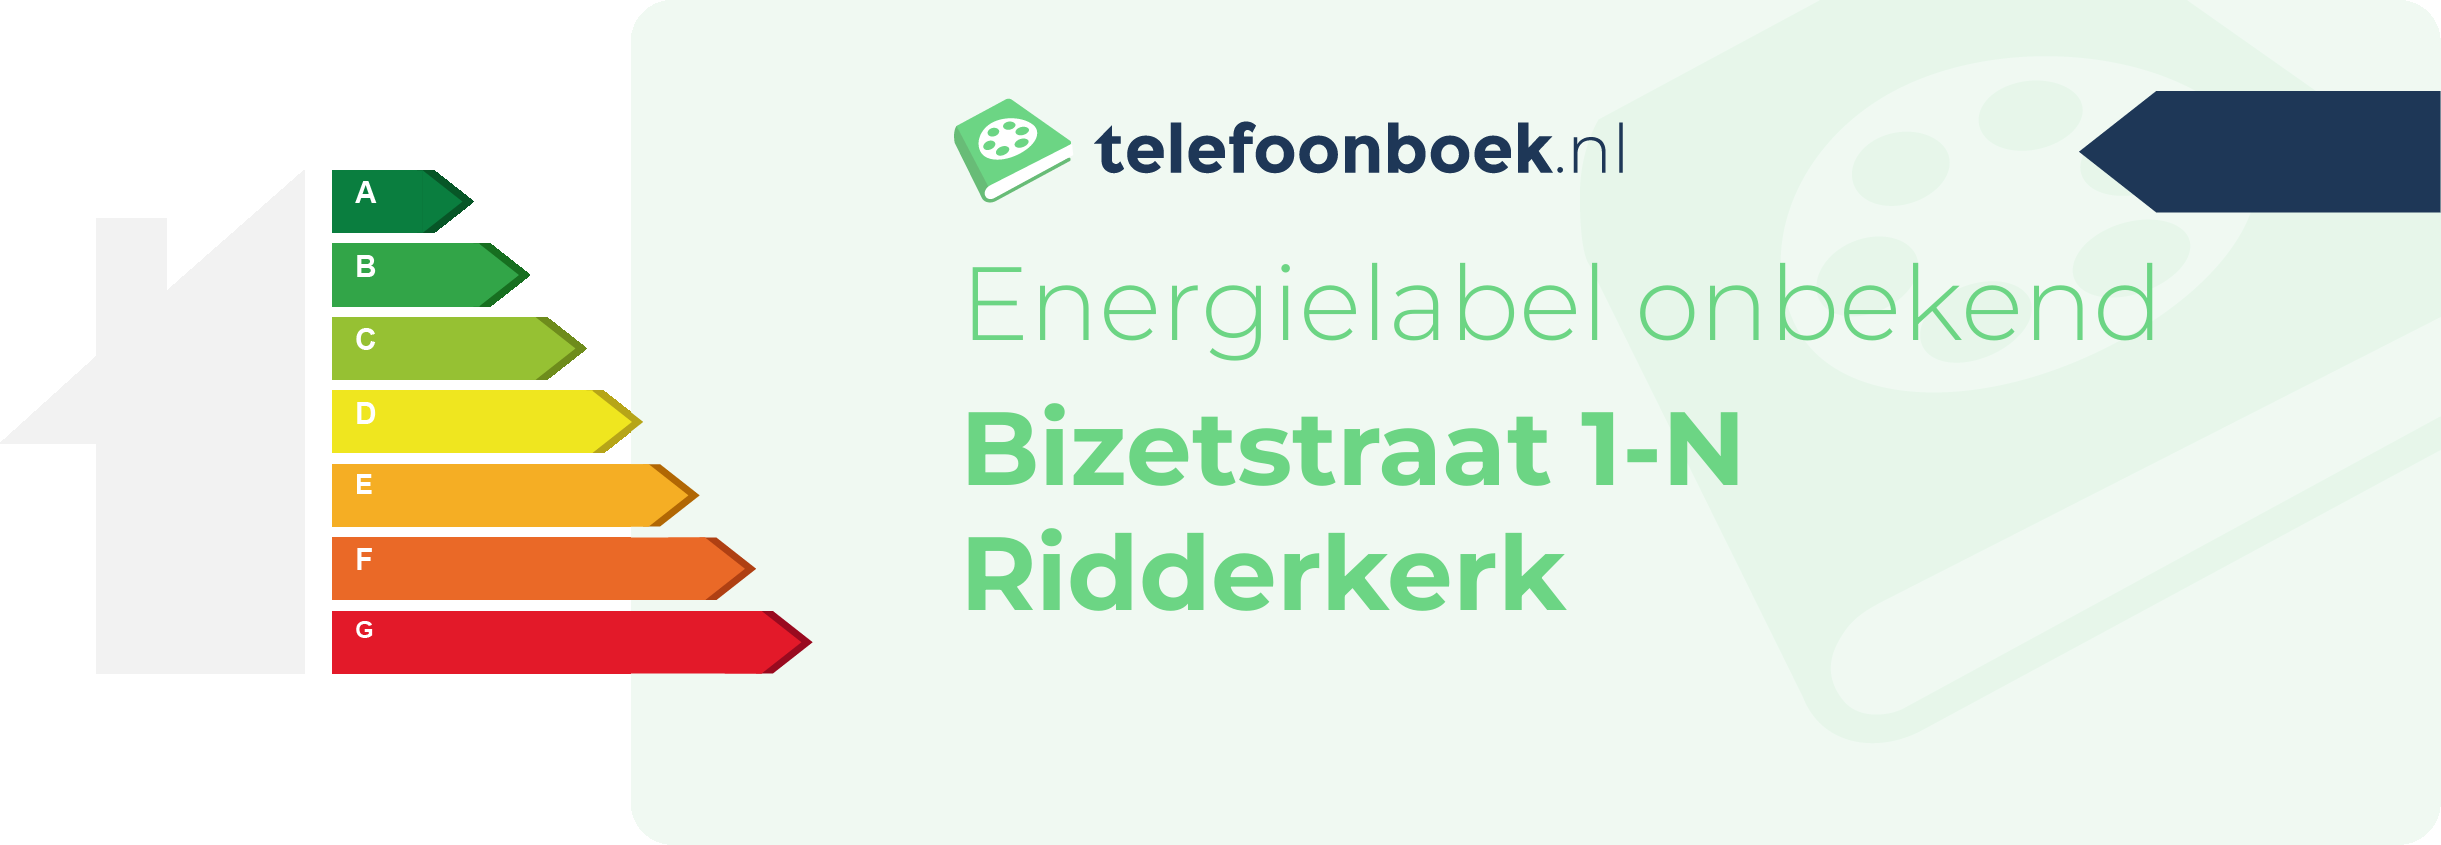 Energielabel Bizetstraat 1-N Ridderkerk